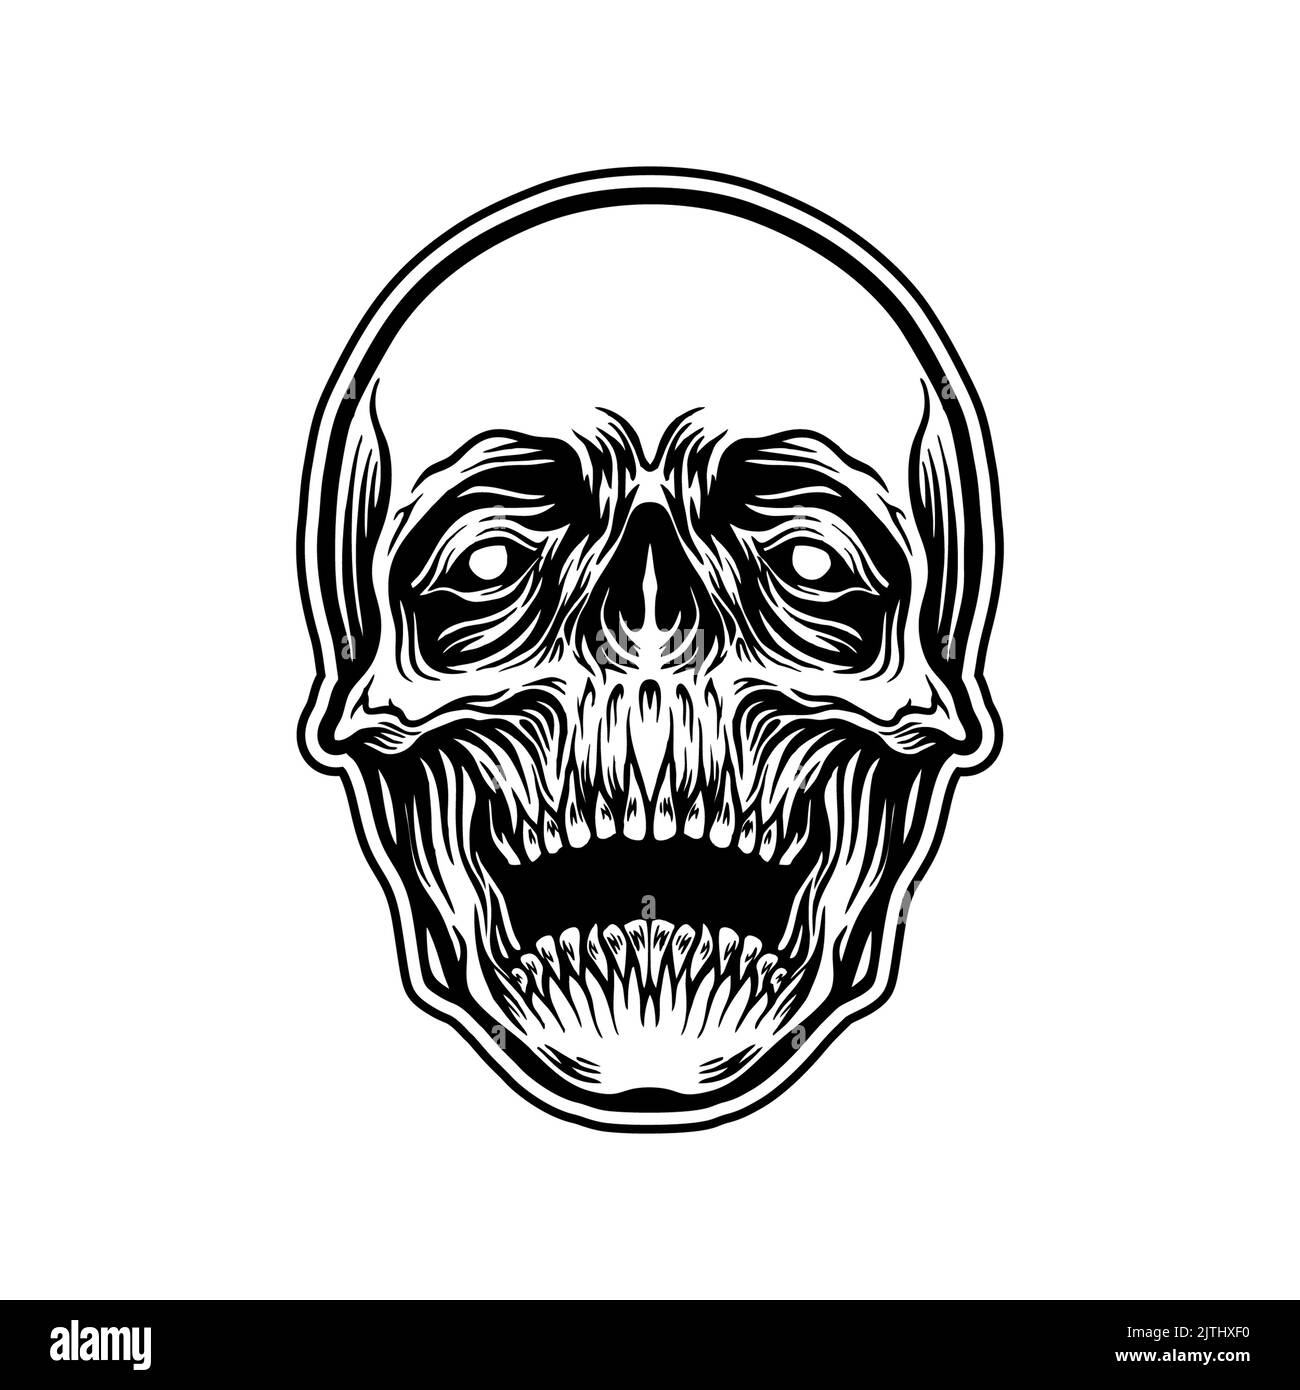 Detaillierte Totenkopf Illustrationen Vektor Illustrationen für Ihre Arbeit Logo, Maskottchen Merchandise T-Shirt, Aufkleber und Label Designs, Poster, Gruß ca. Stockfoto